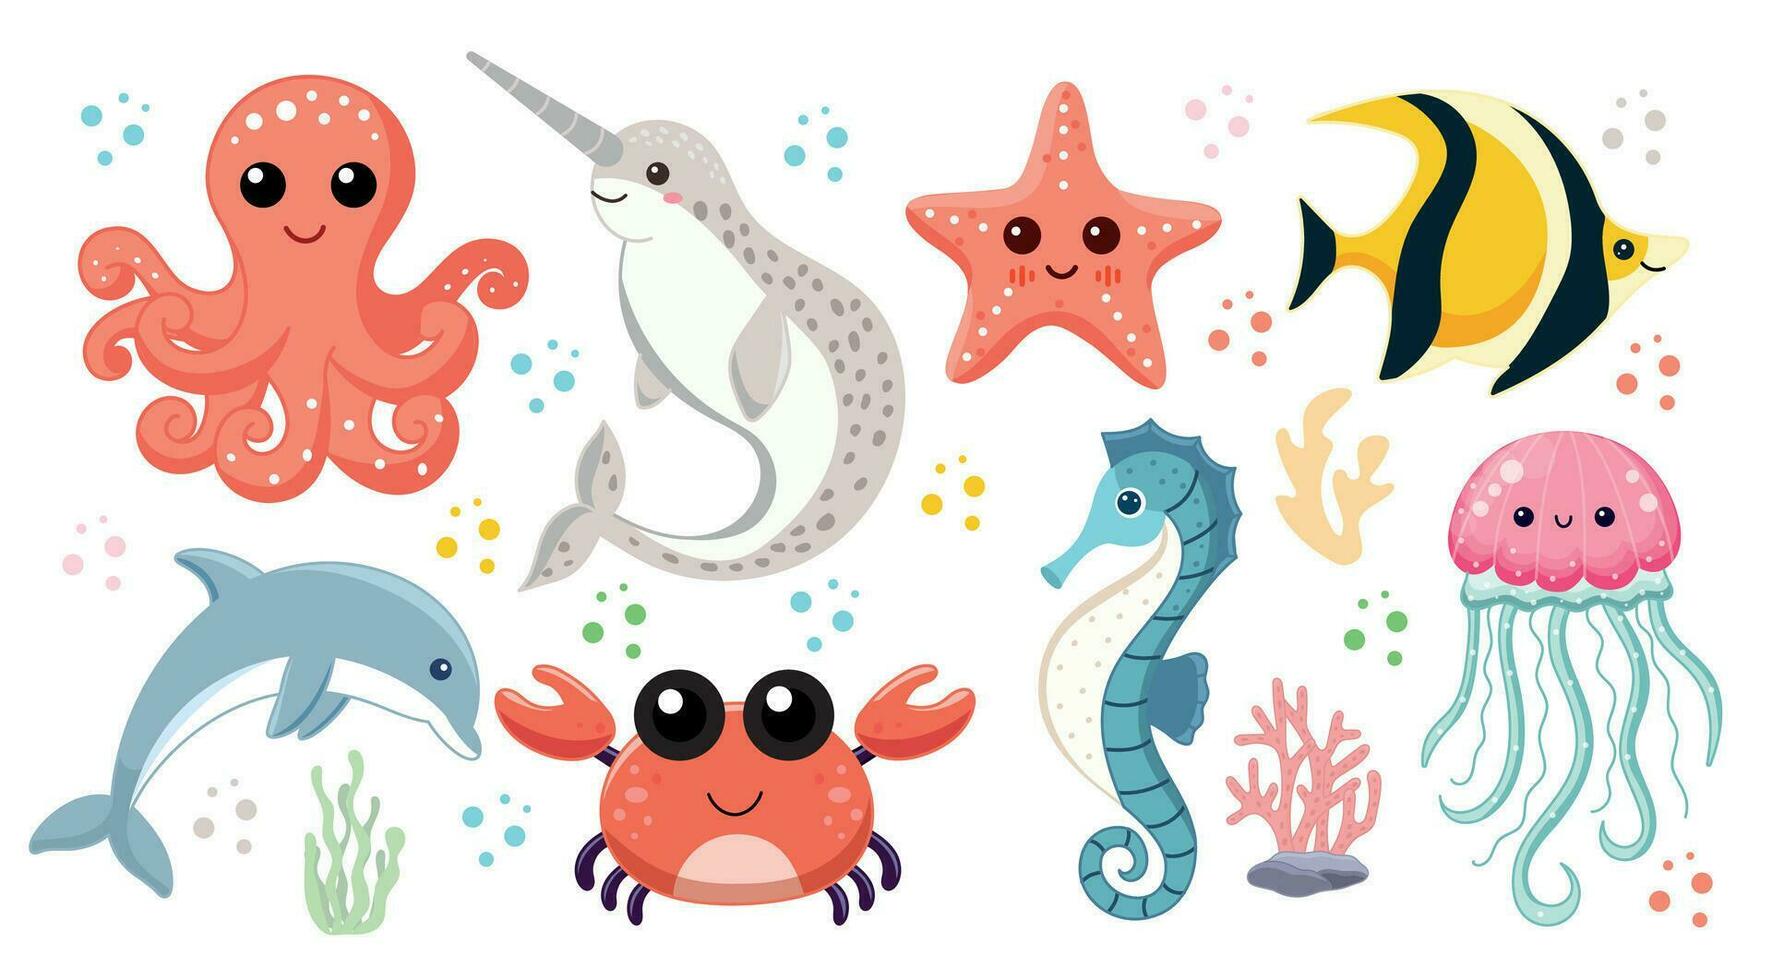 söt hav djur, uppsättning av illustrationer med vatten- invånare av de hav, bläckfisk och narval, sjöstjärna och gul fisk, delfin och krabba, sjöhäst och manet vektor